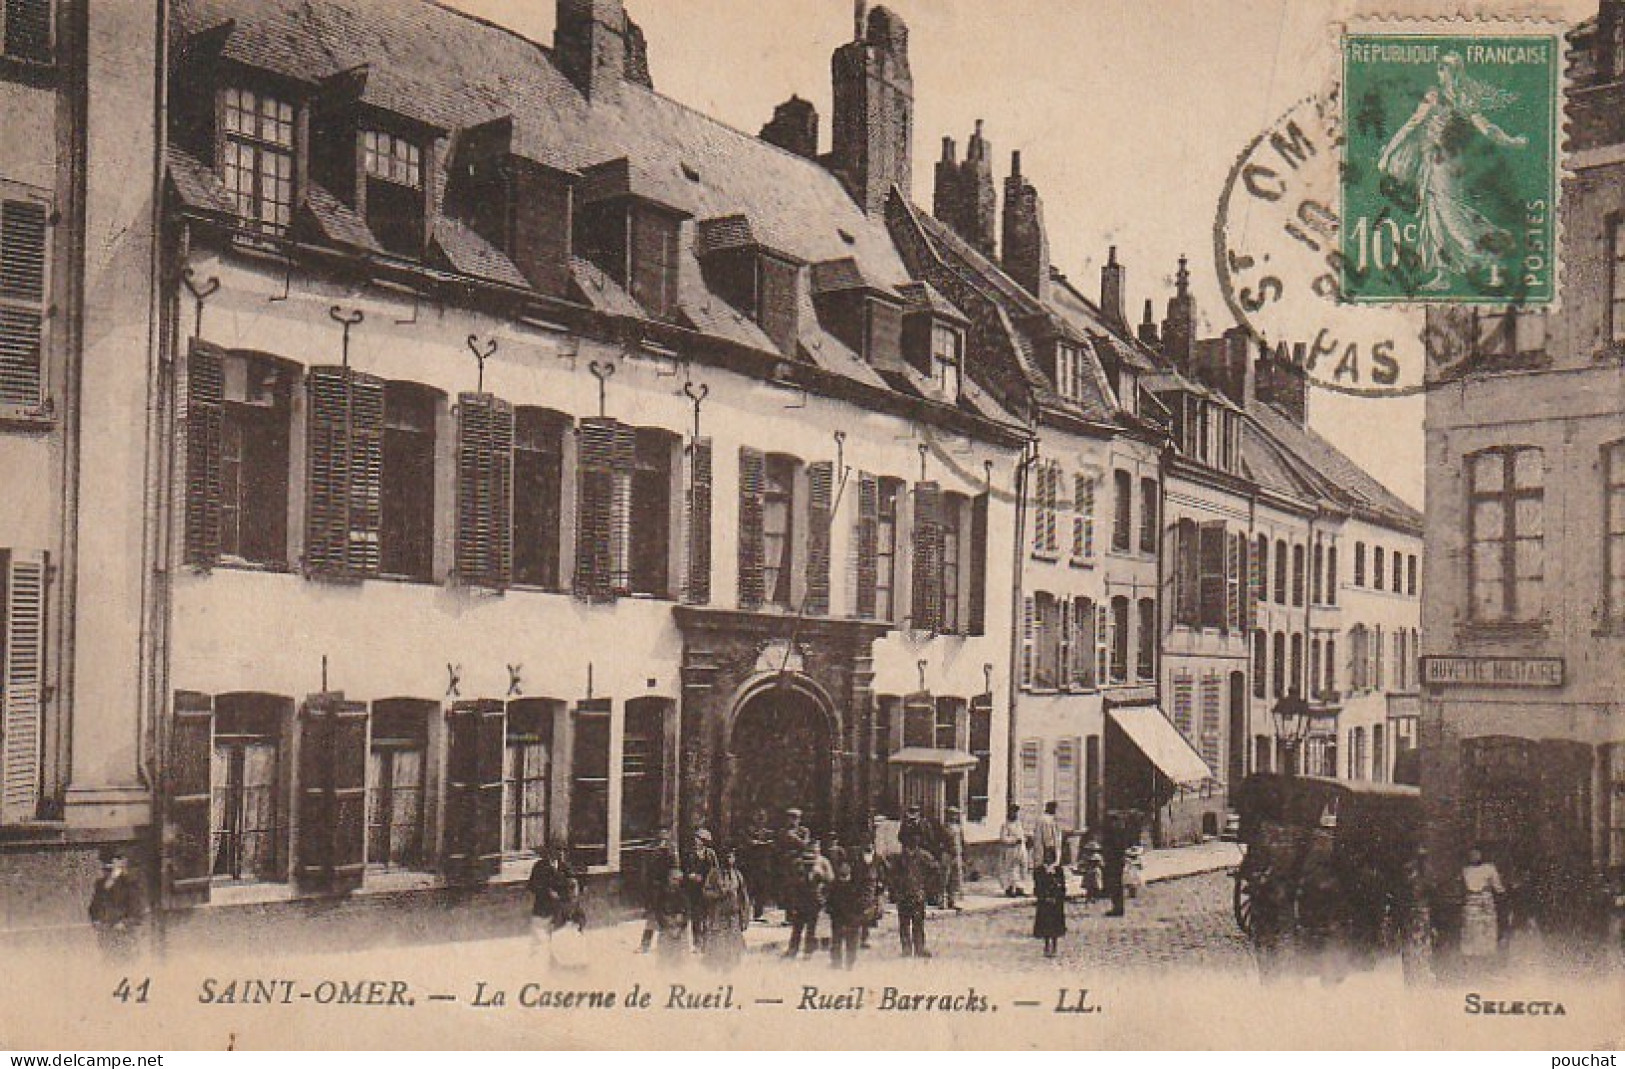 GU 8 -(62) SAINT OMER - LA CASERNE DE RUEIL - BUVETTE MILITAIRE  -  2 SCANS - Saint Omer